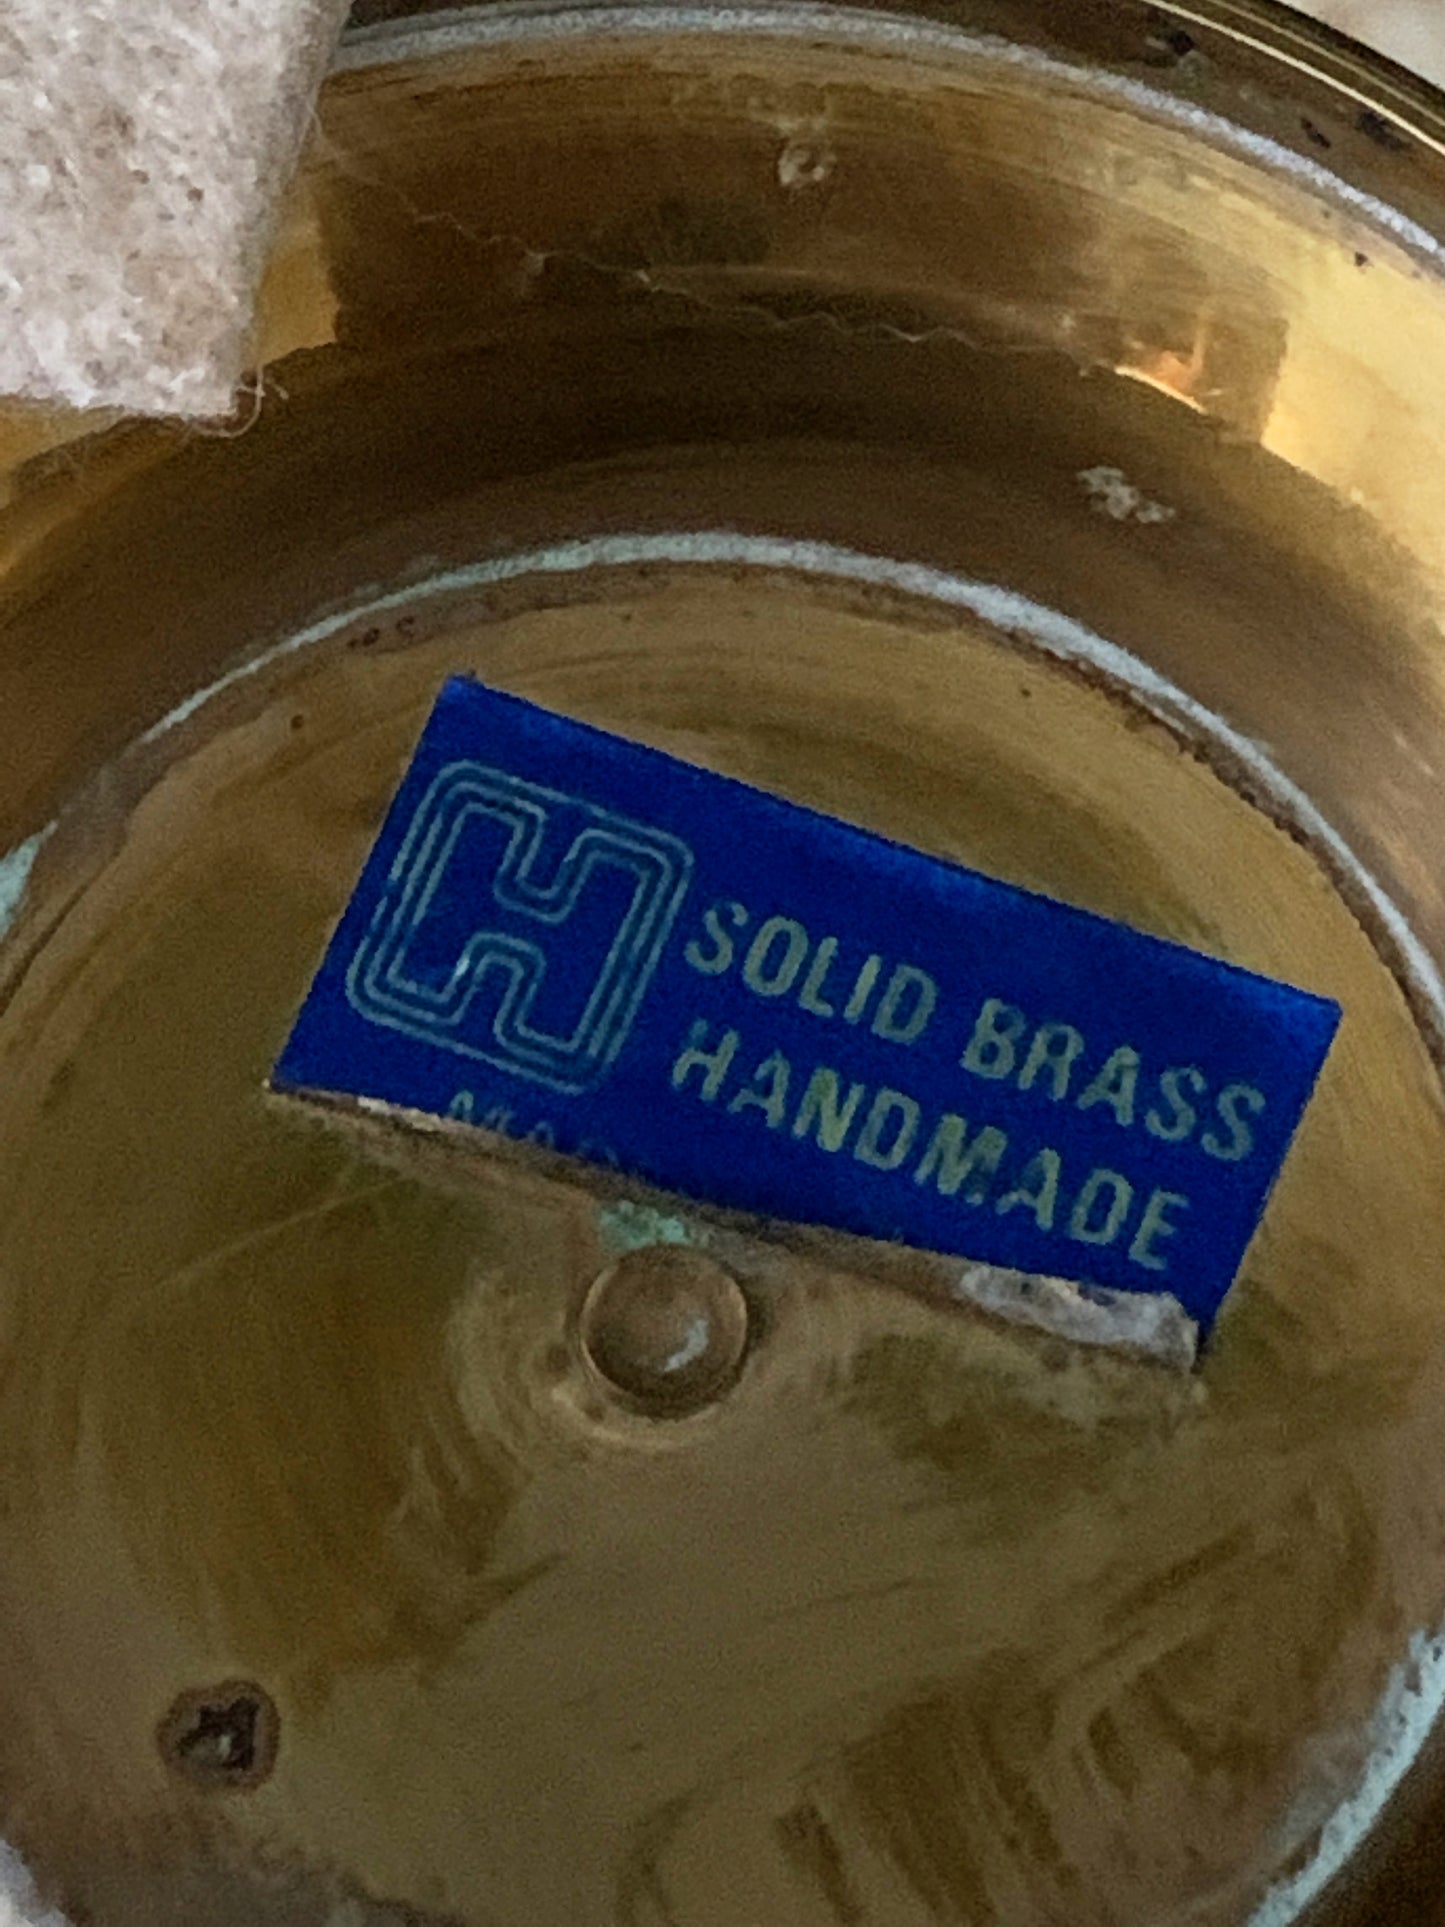 Solid Brass Urn Boho Home Decor Vintage Brass Urn